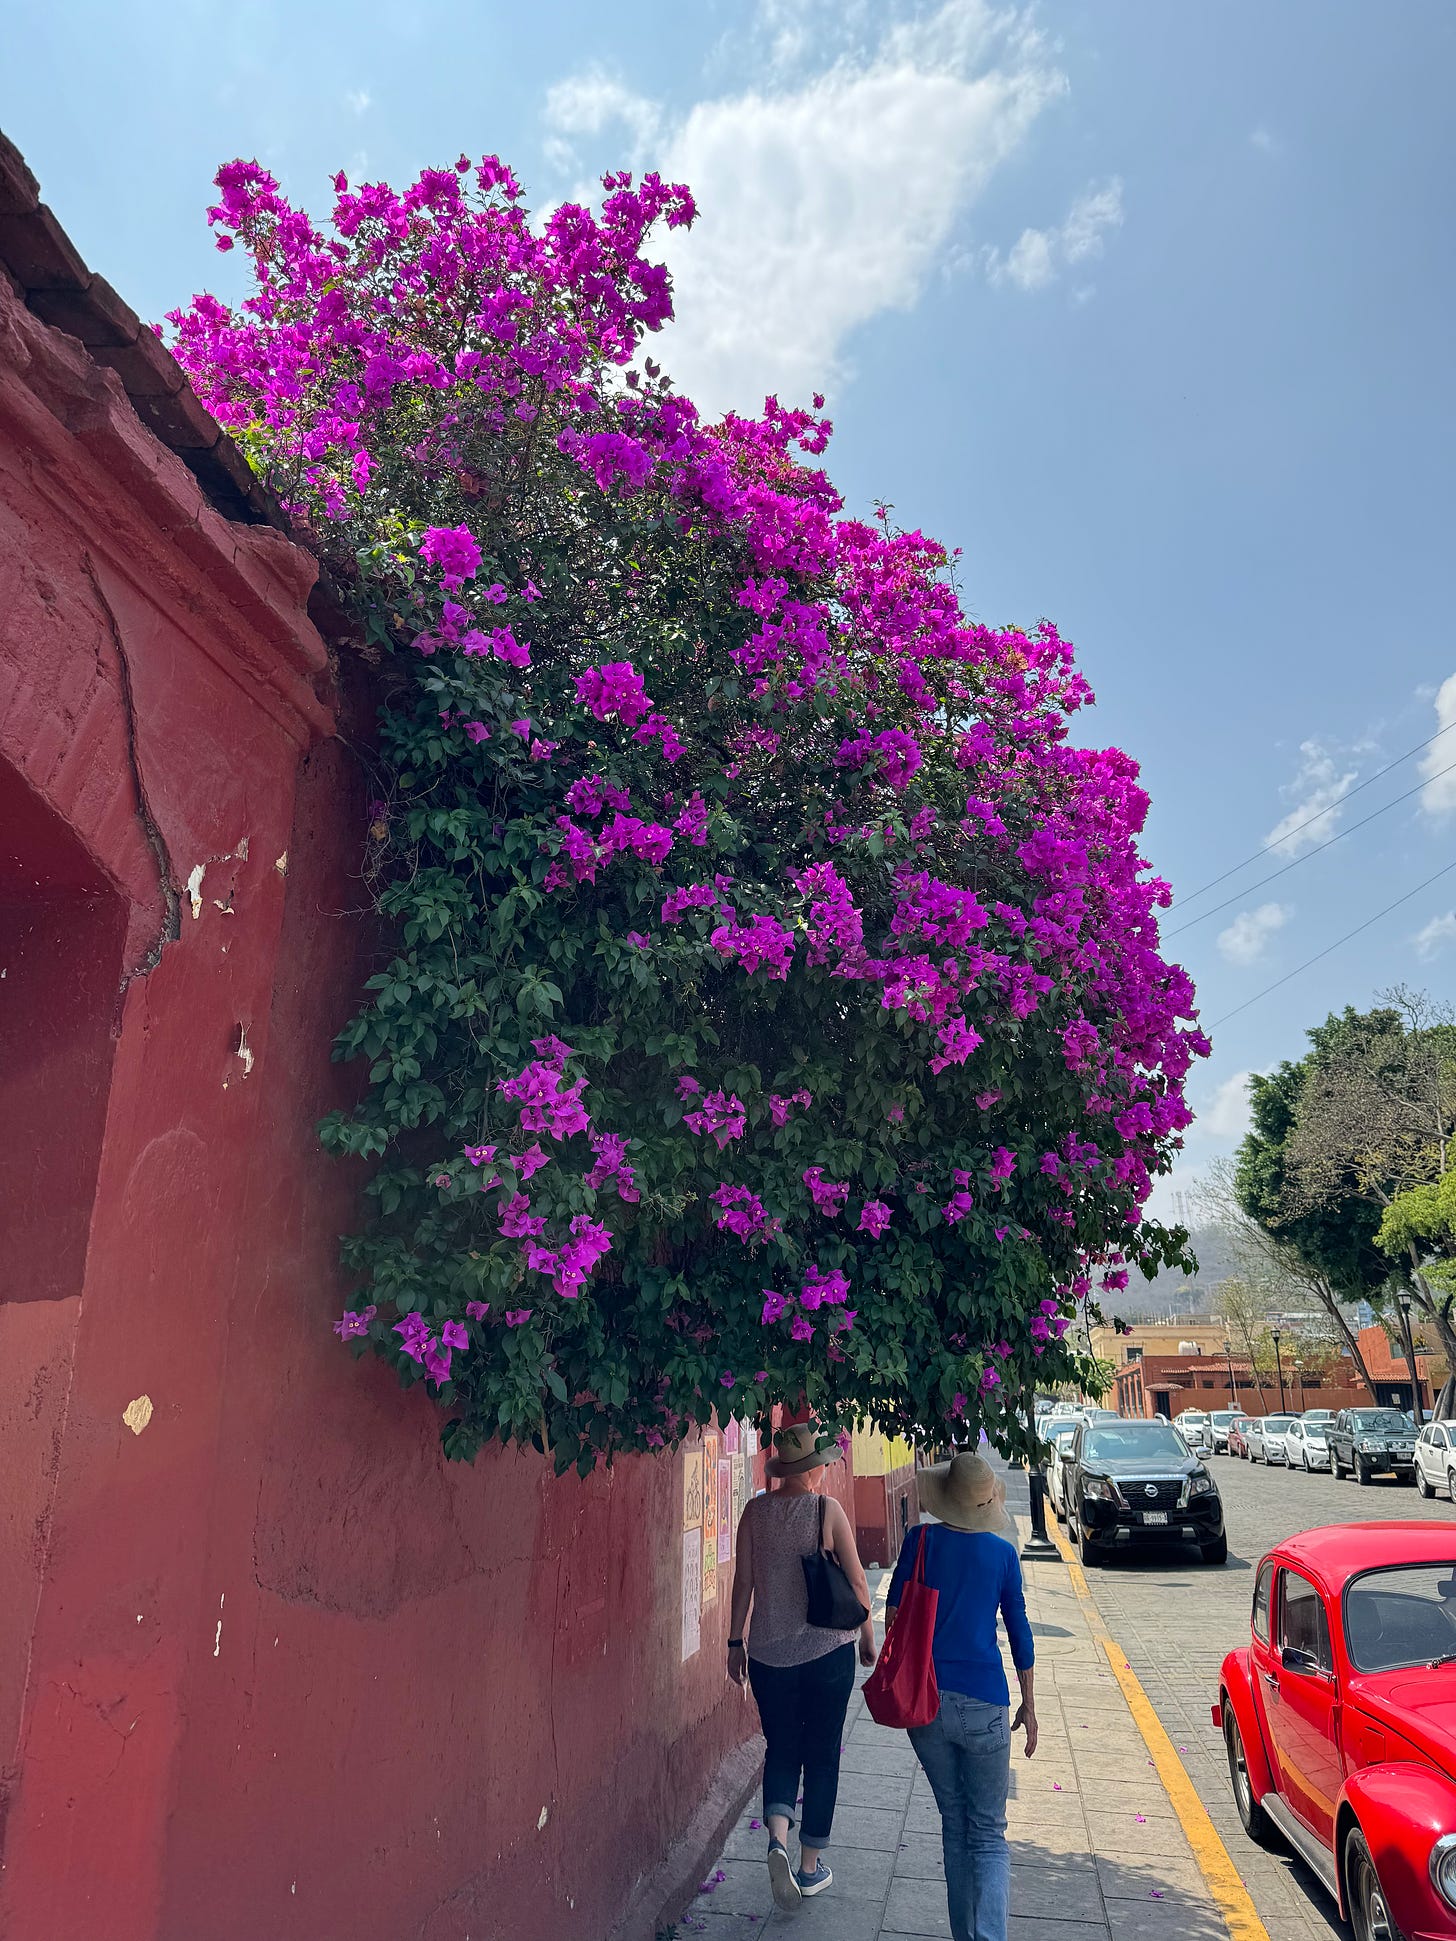 A flowering tree in Oaxaca.